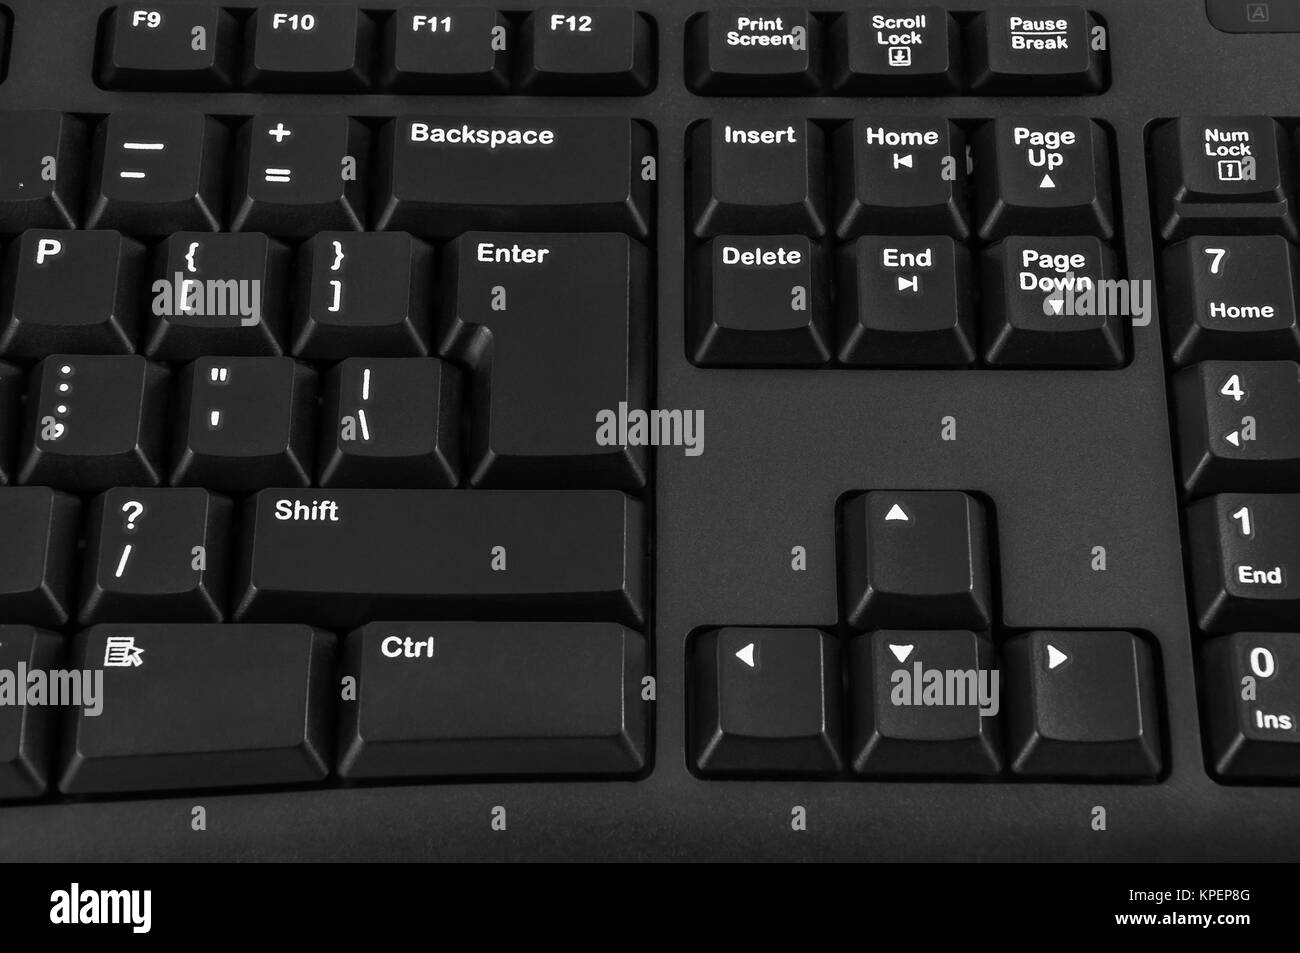 Nahaufnahme der Enter- und Shift-Taste Ihrer Tastatur schwarz  Stockfotografie - Alamy